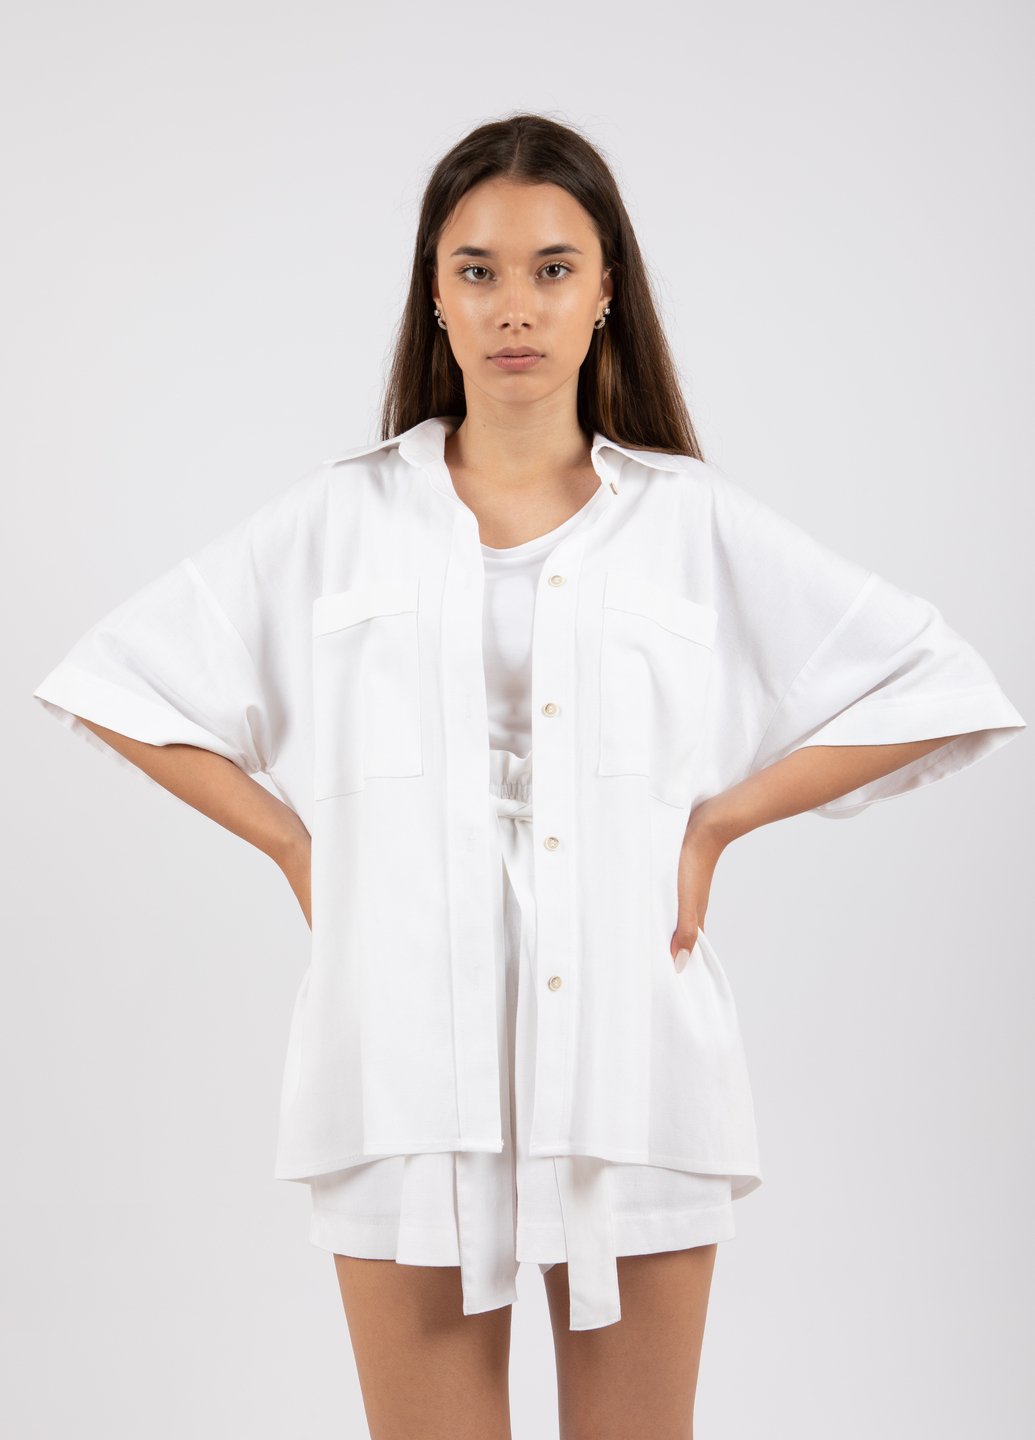 Купить Льняная оверсайз рубашка женская Merlini Касабланка 200000023 - Белый, 46-48 в интернет-магазине